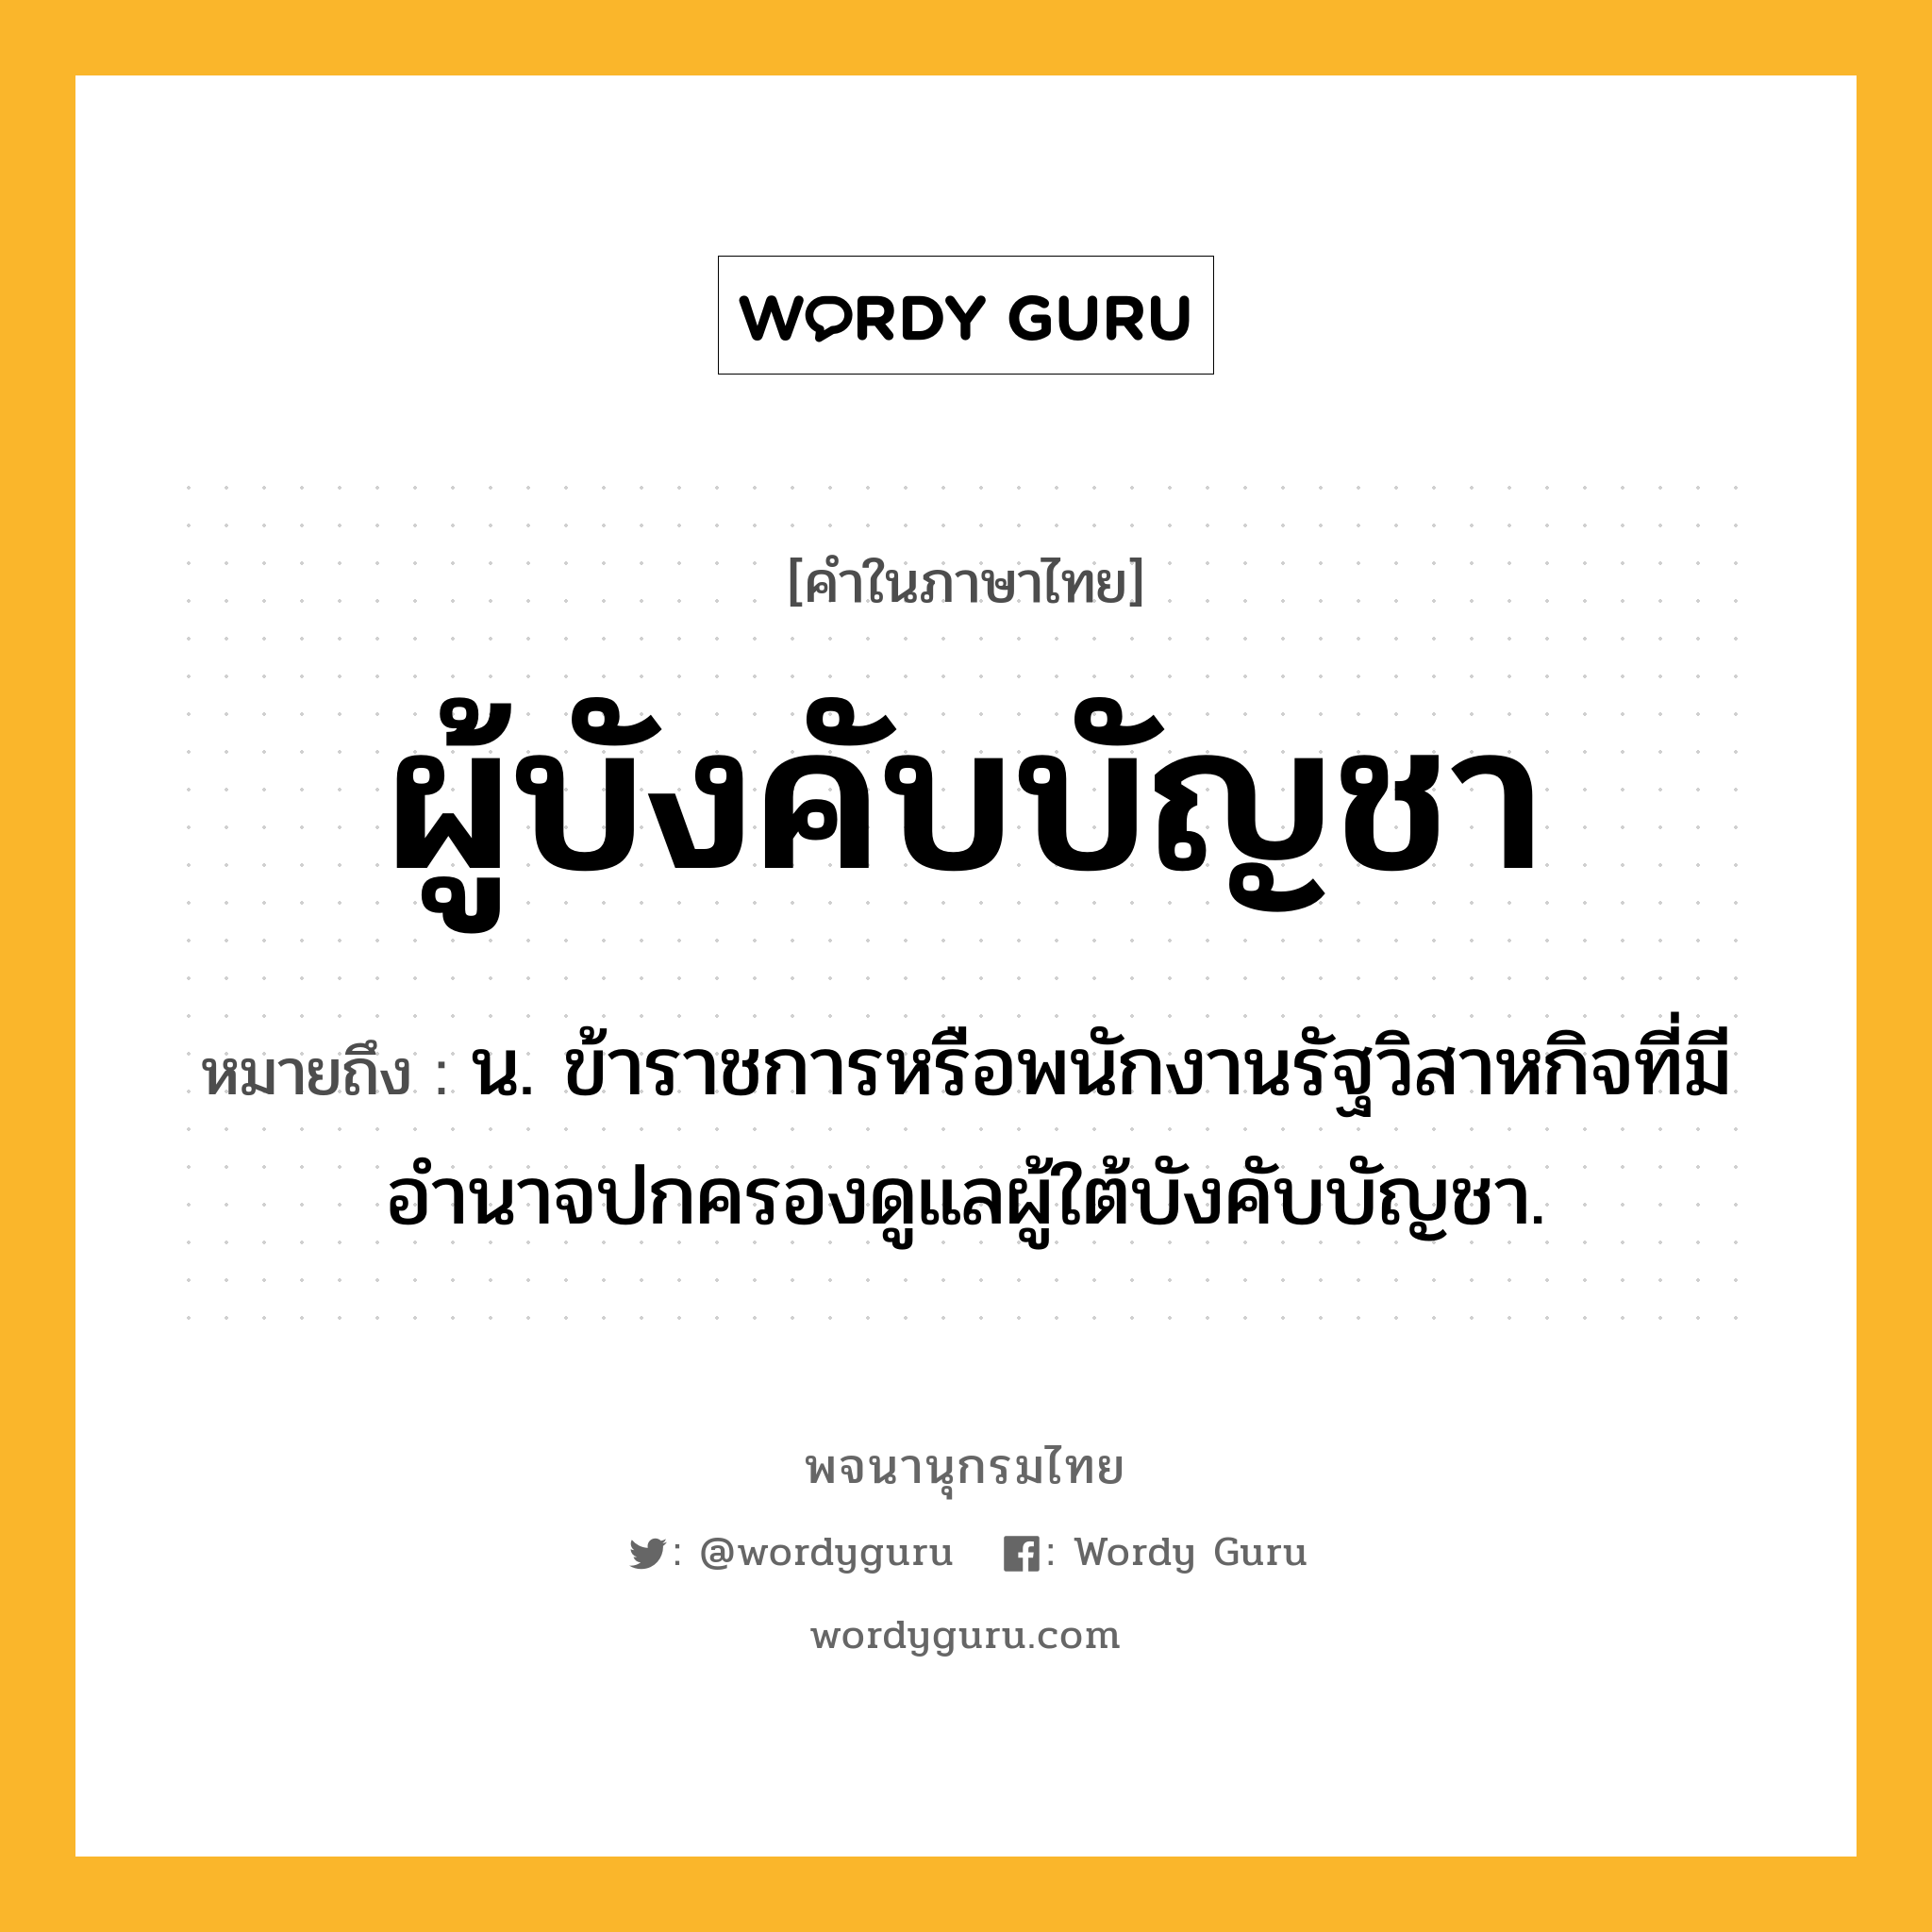 ผู้บังคับบัญชา หมายถึงอะไร?, คำในภาษาไทย ผู้บังคับบัญชา หมายถึง น. ข้าราชการหรือพนักงานรัฐวิสาหกิจที่มีอำนาจปกครองดูแลผู้ใต้บังคับบัญชา.